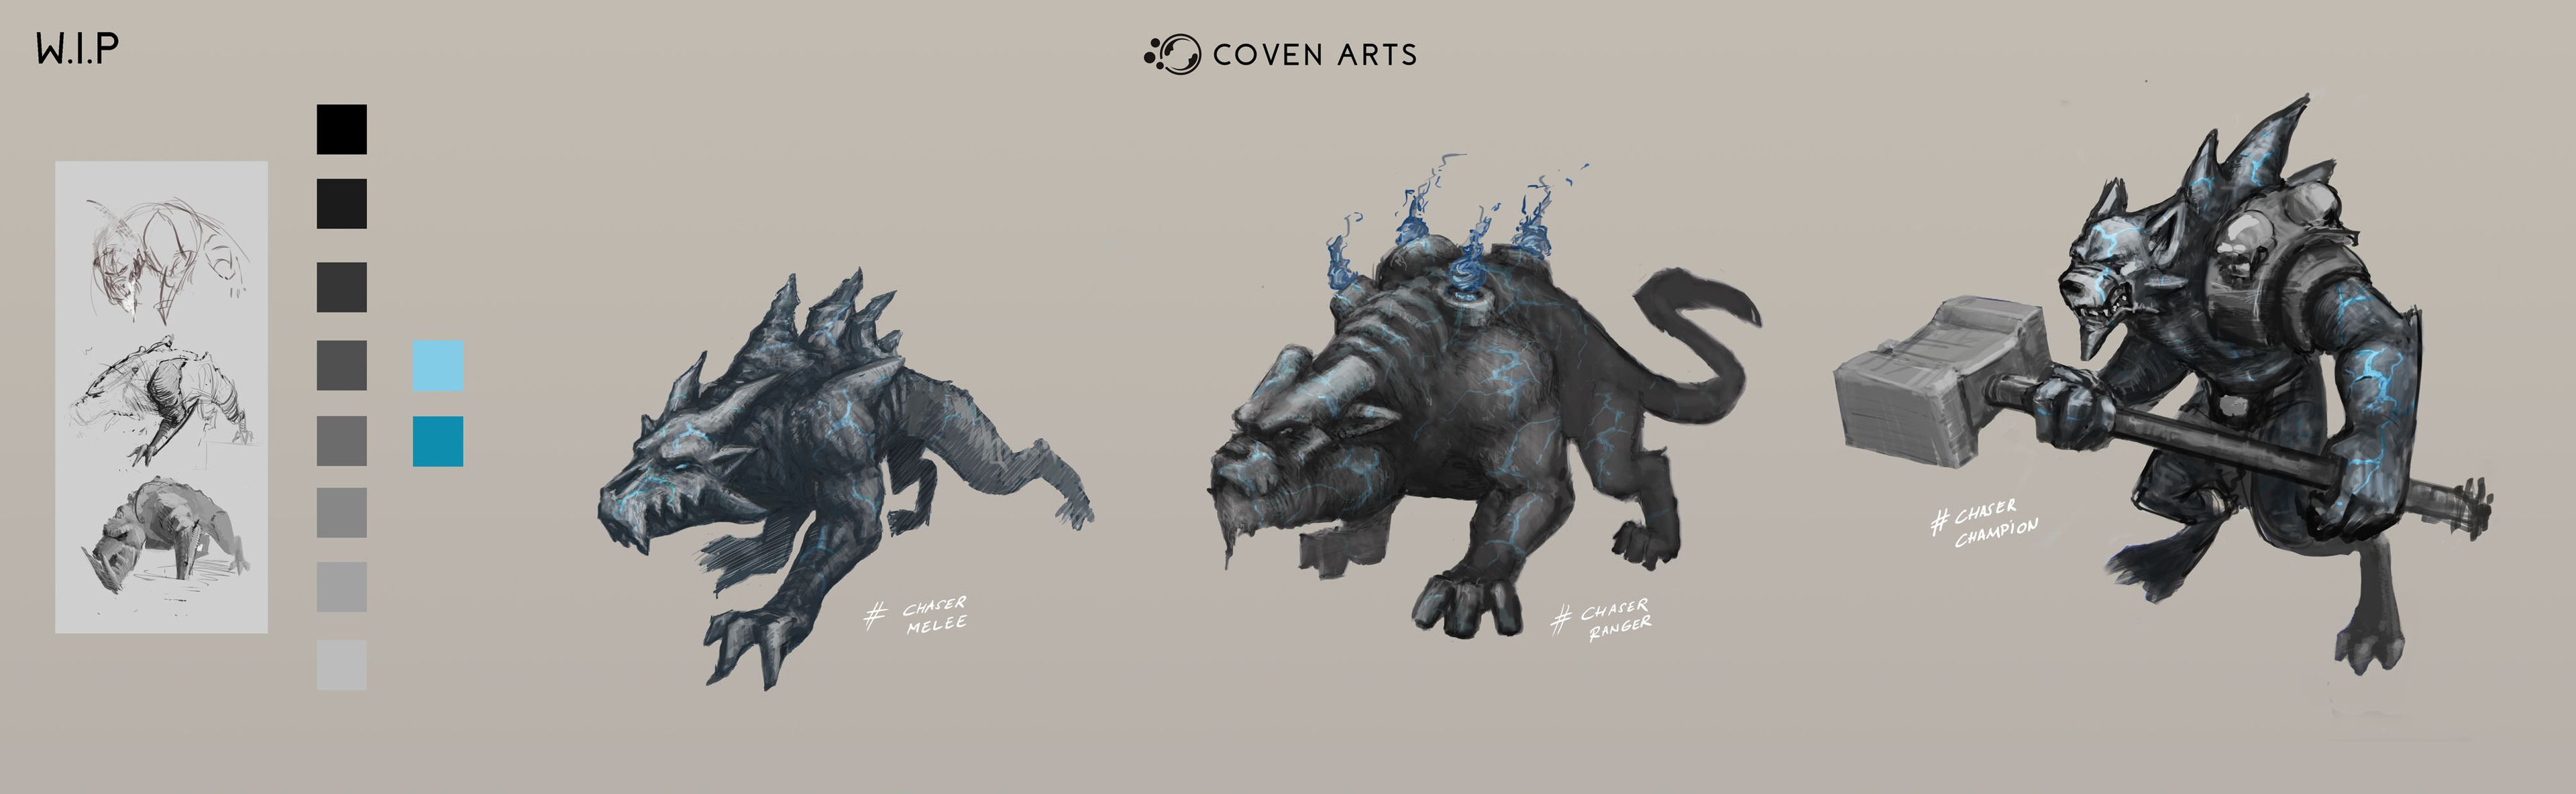 En los próximos meses Coven Arts irá implementando el diseño de los enemigos en el juego